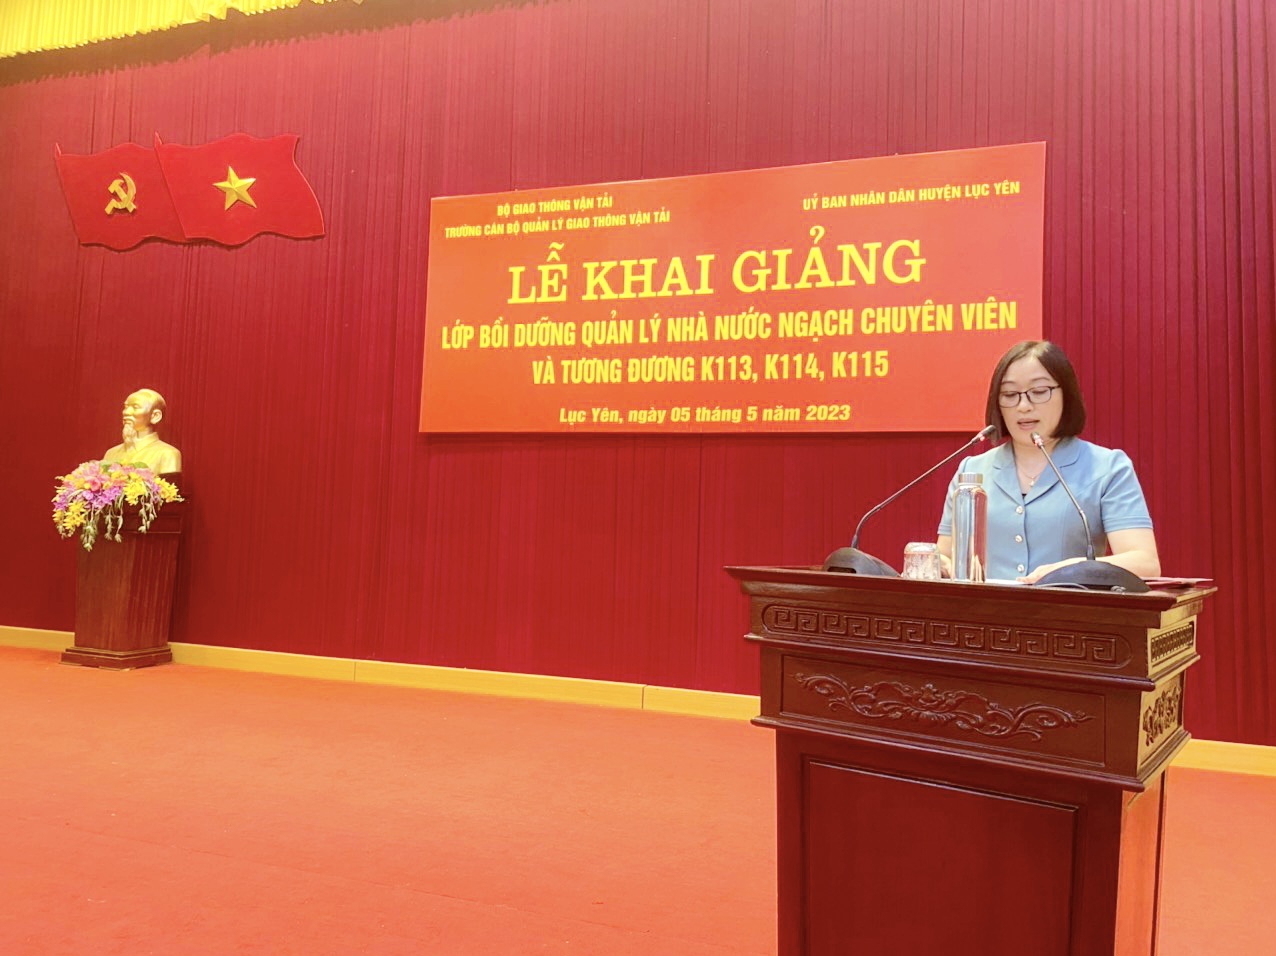 Khai giảng các lớp Bồi dưỡng đối với ngạch chuyên viên và tương đương tại huyện Lục Yên tỉnh Yên Bái